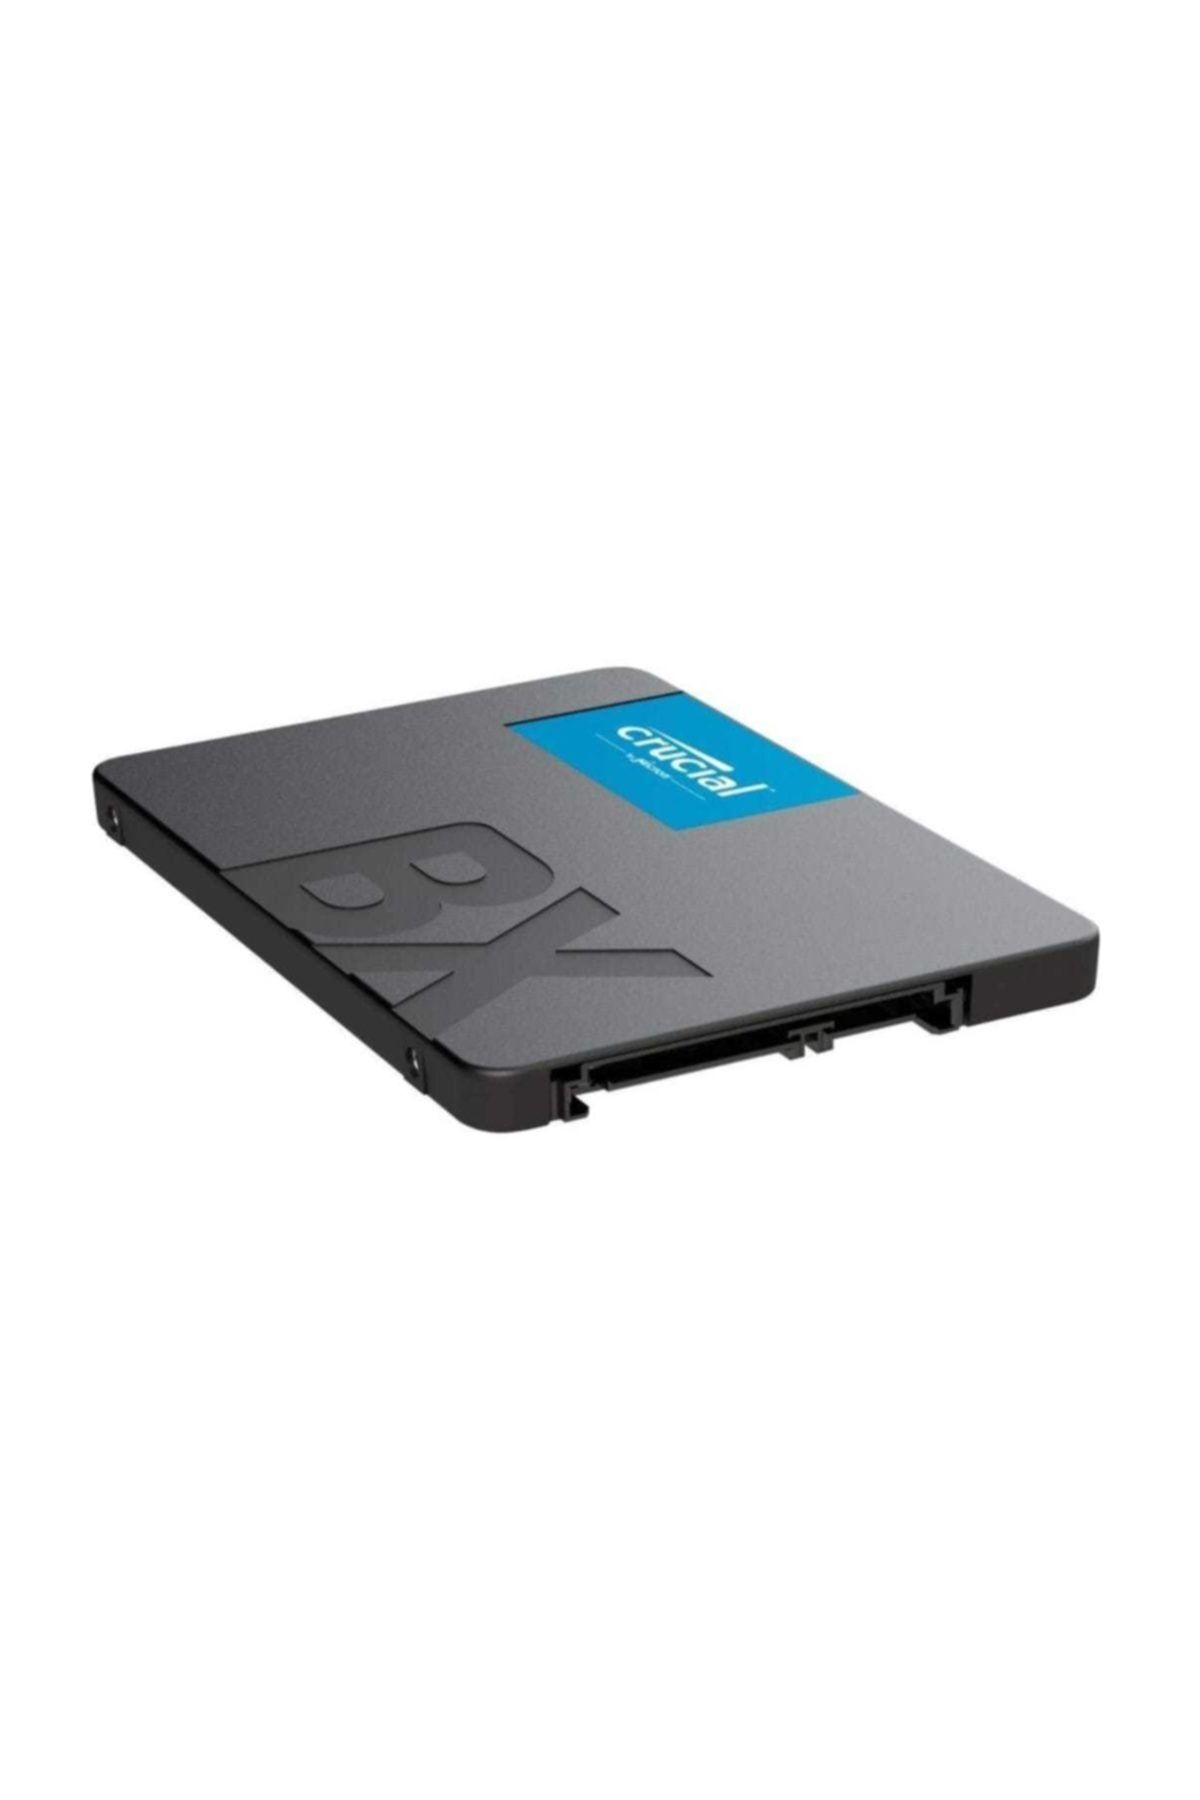 Crucial 2.5 inç BX500 3DNAND Sata 3 SSD CT240BX500SSD1 240 gb.